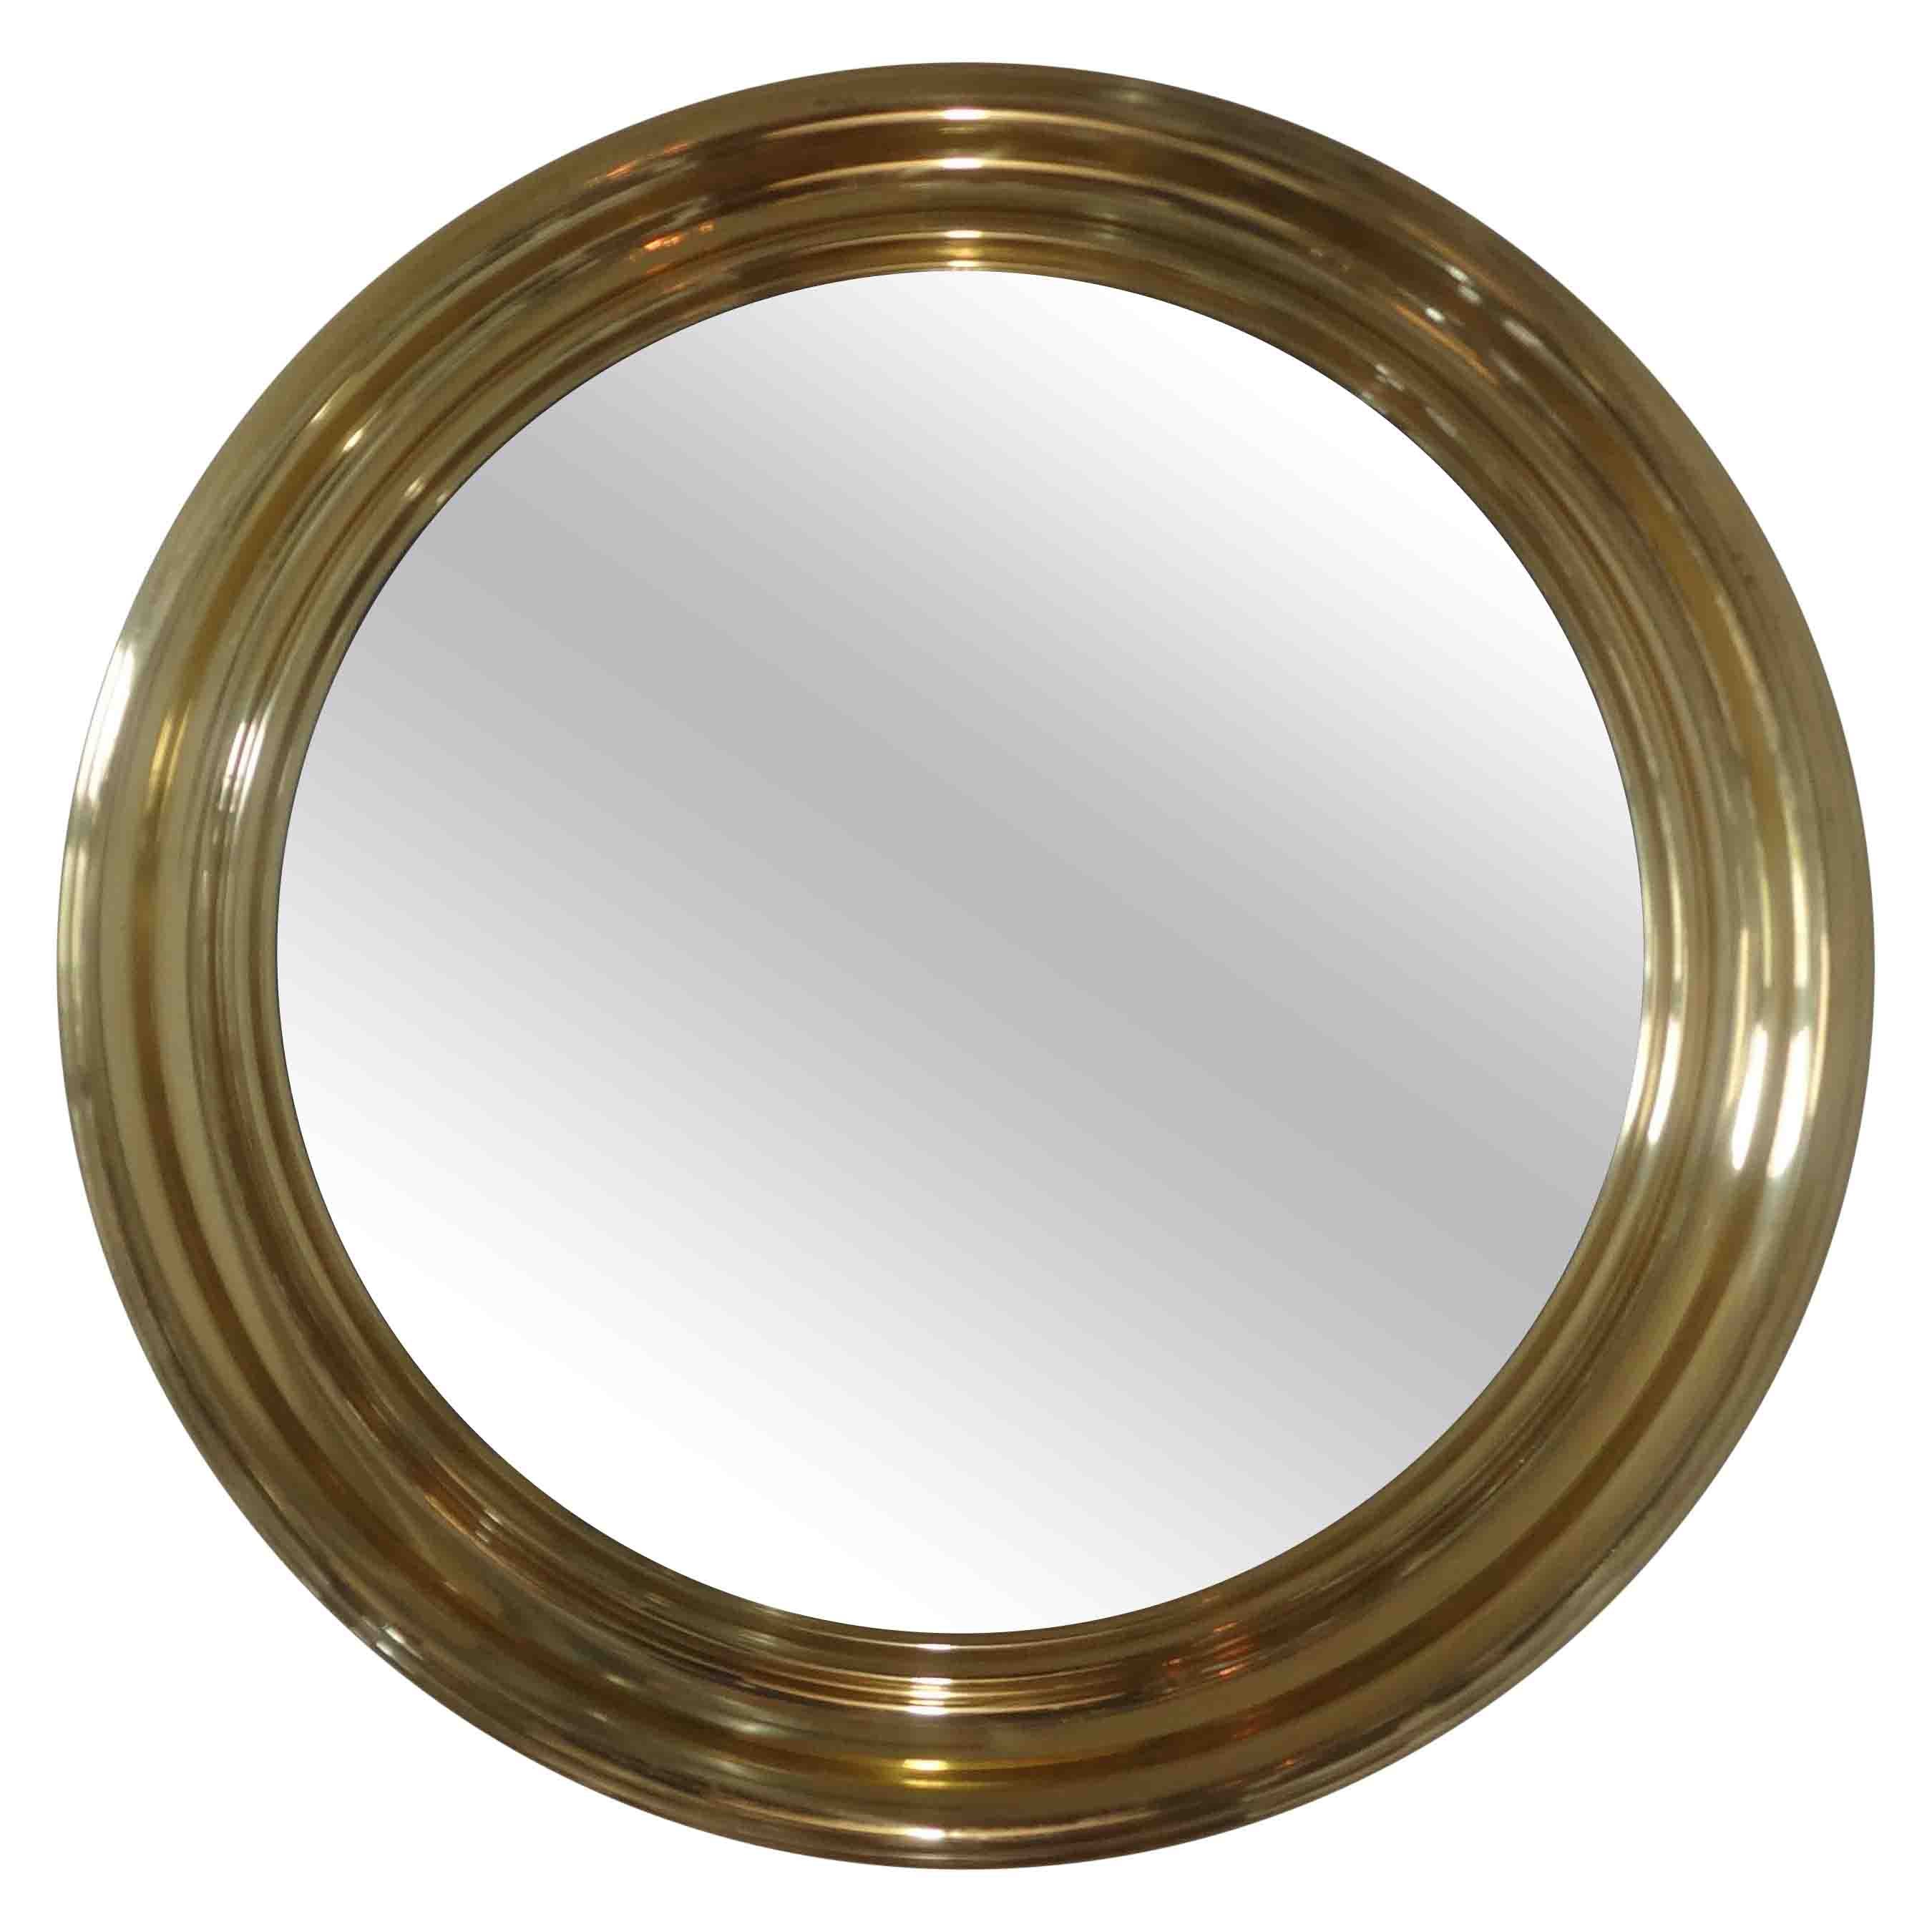 Vintage Italian Round Brass Mirror